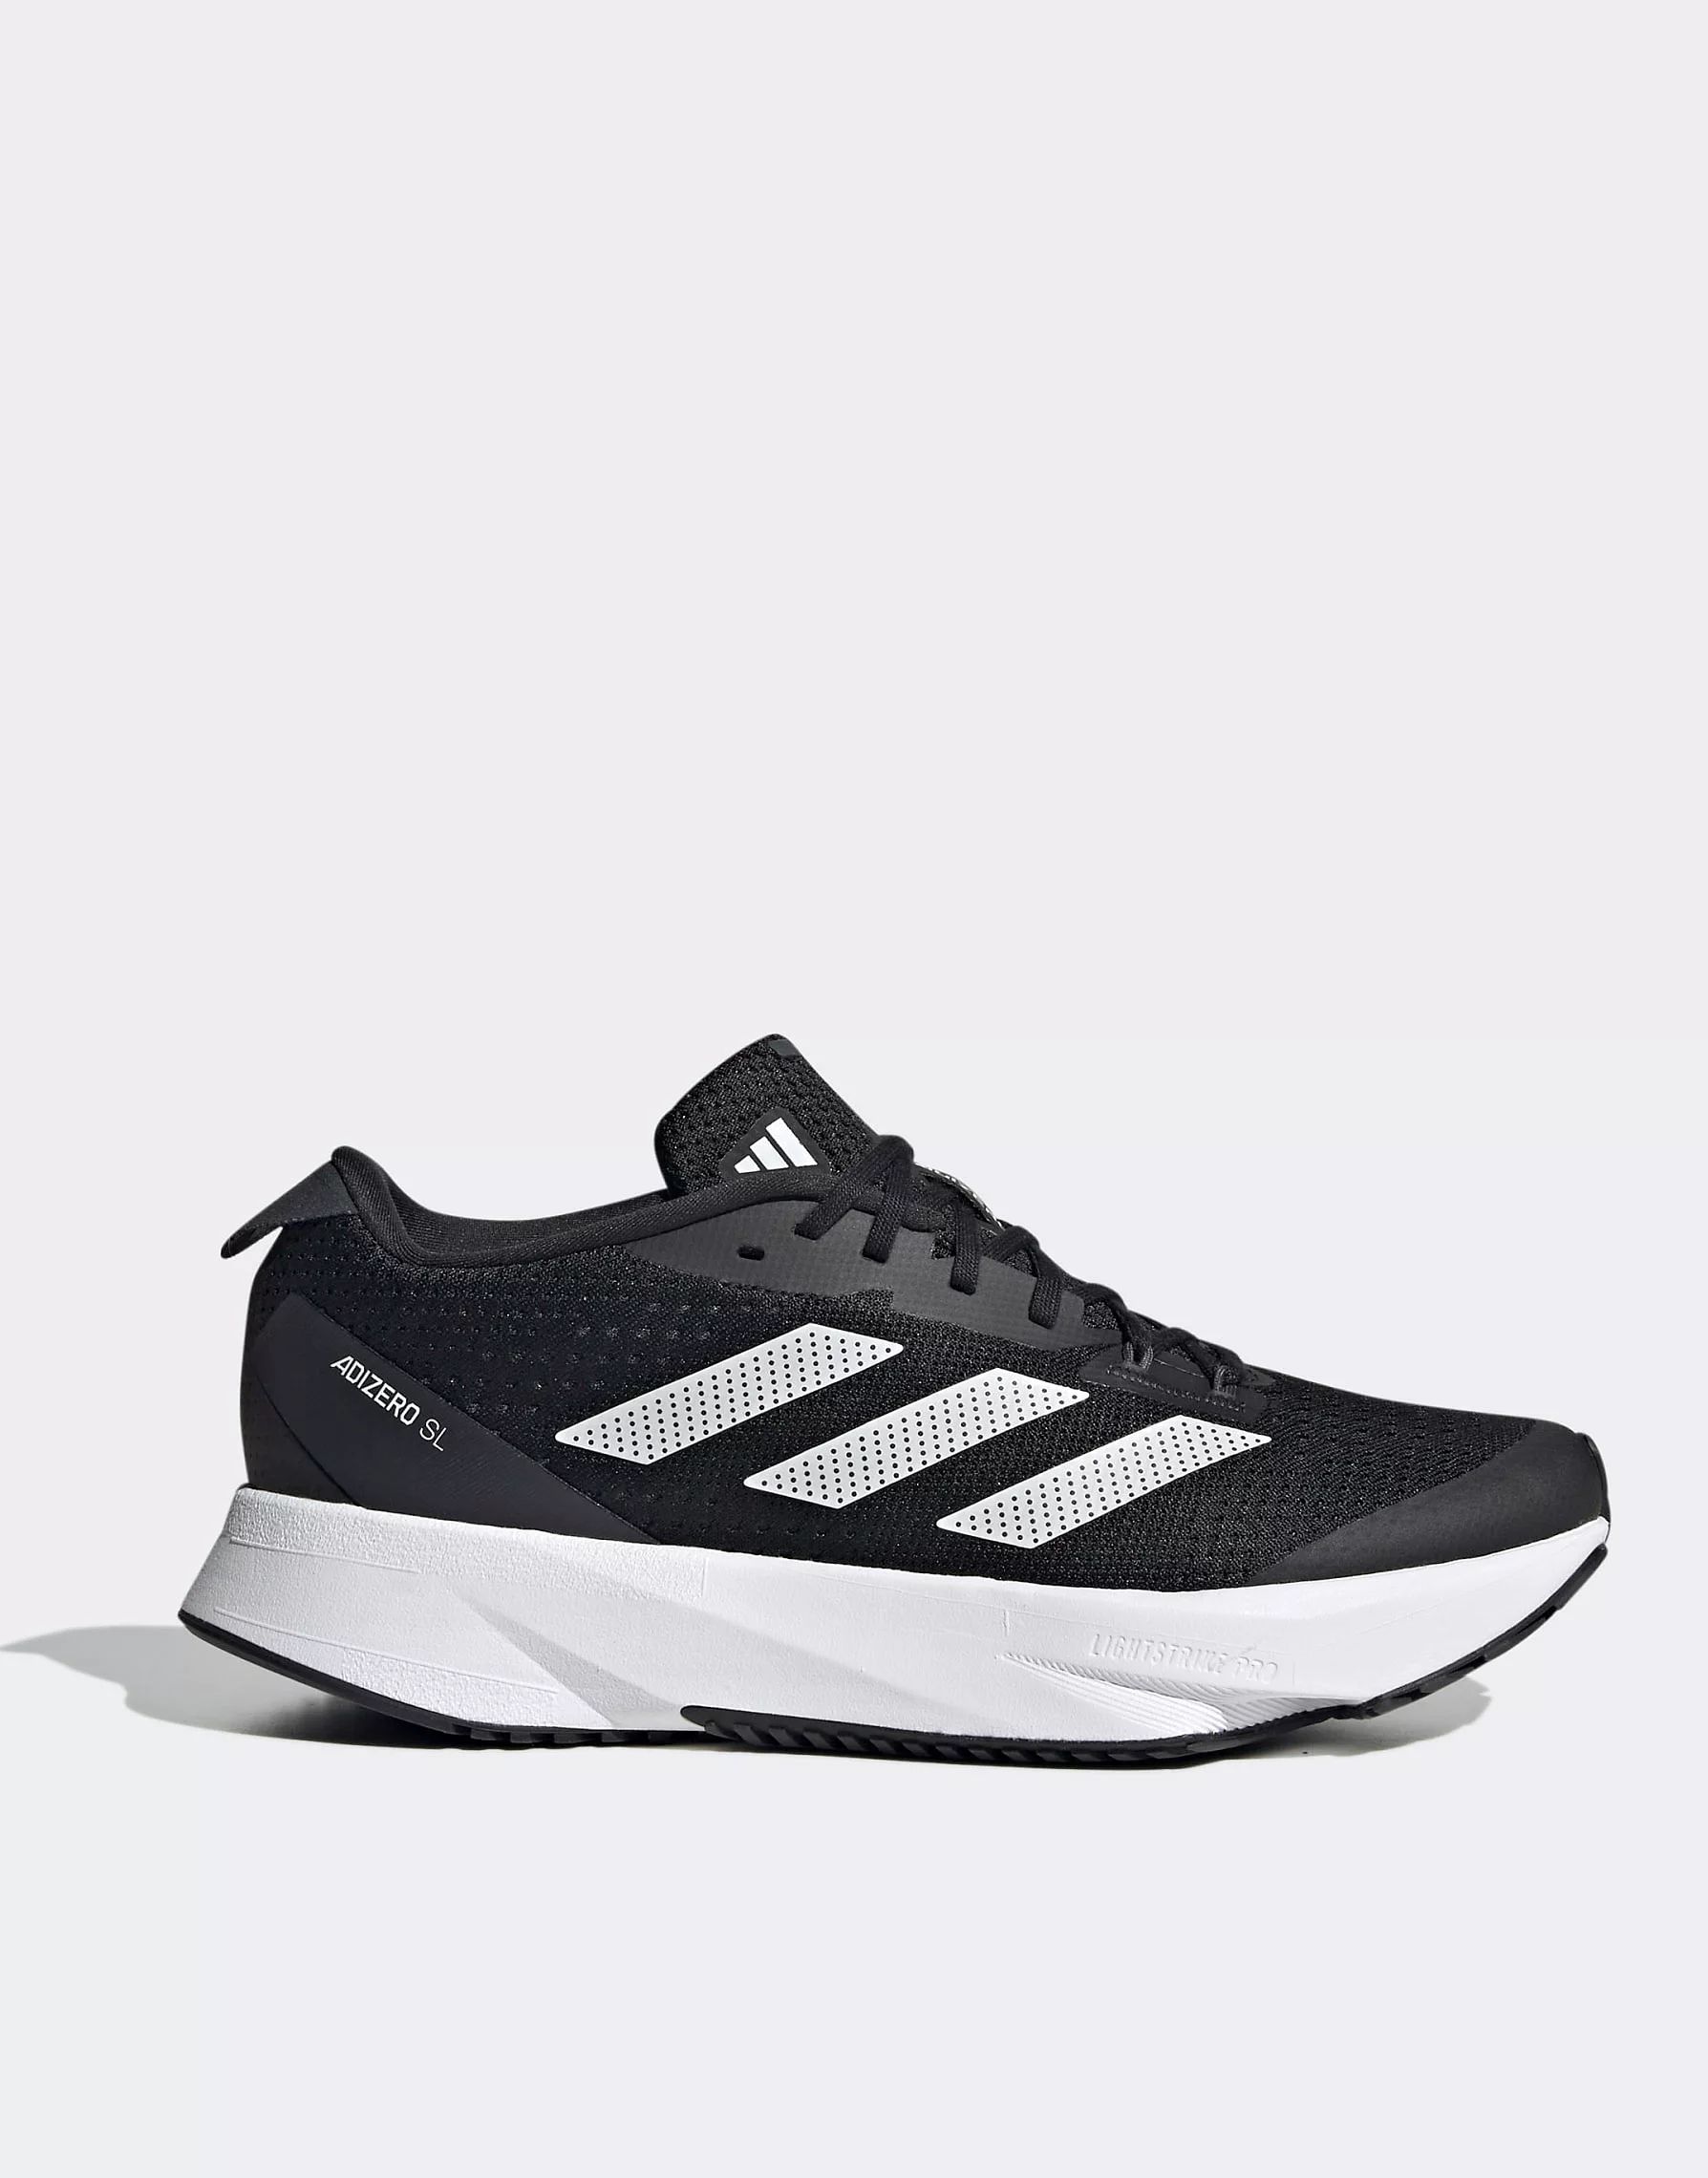 adidas - Hardlopen - Adizero SL - Sneakers in zwart met wit | ASOS (Global)